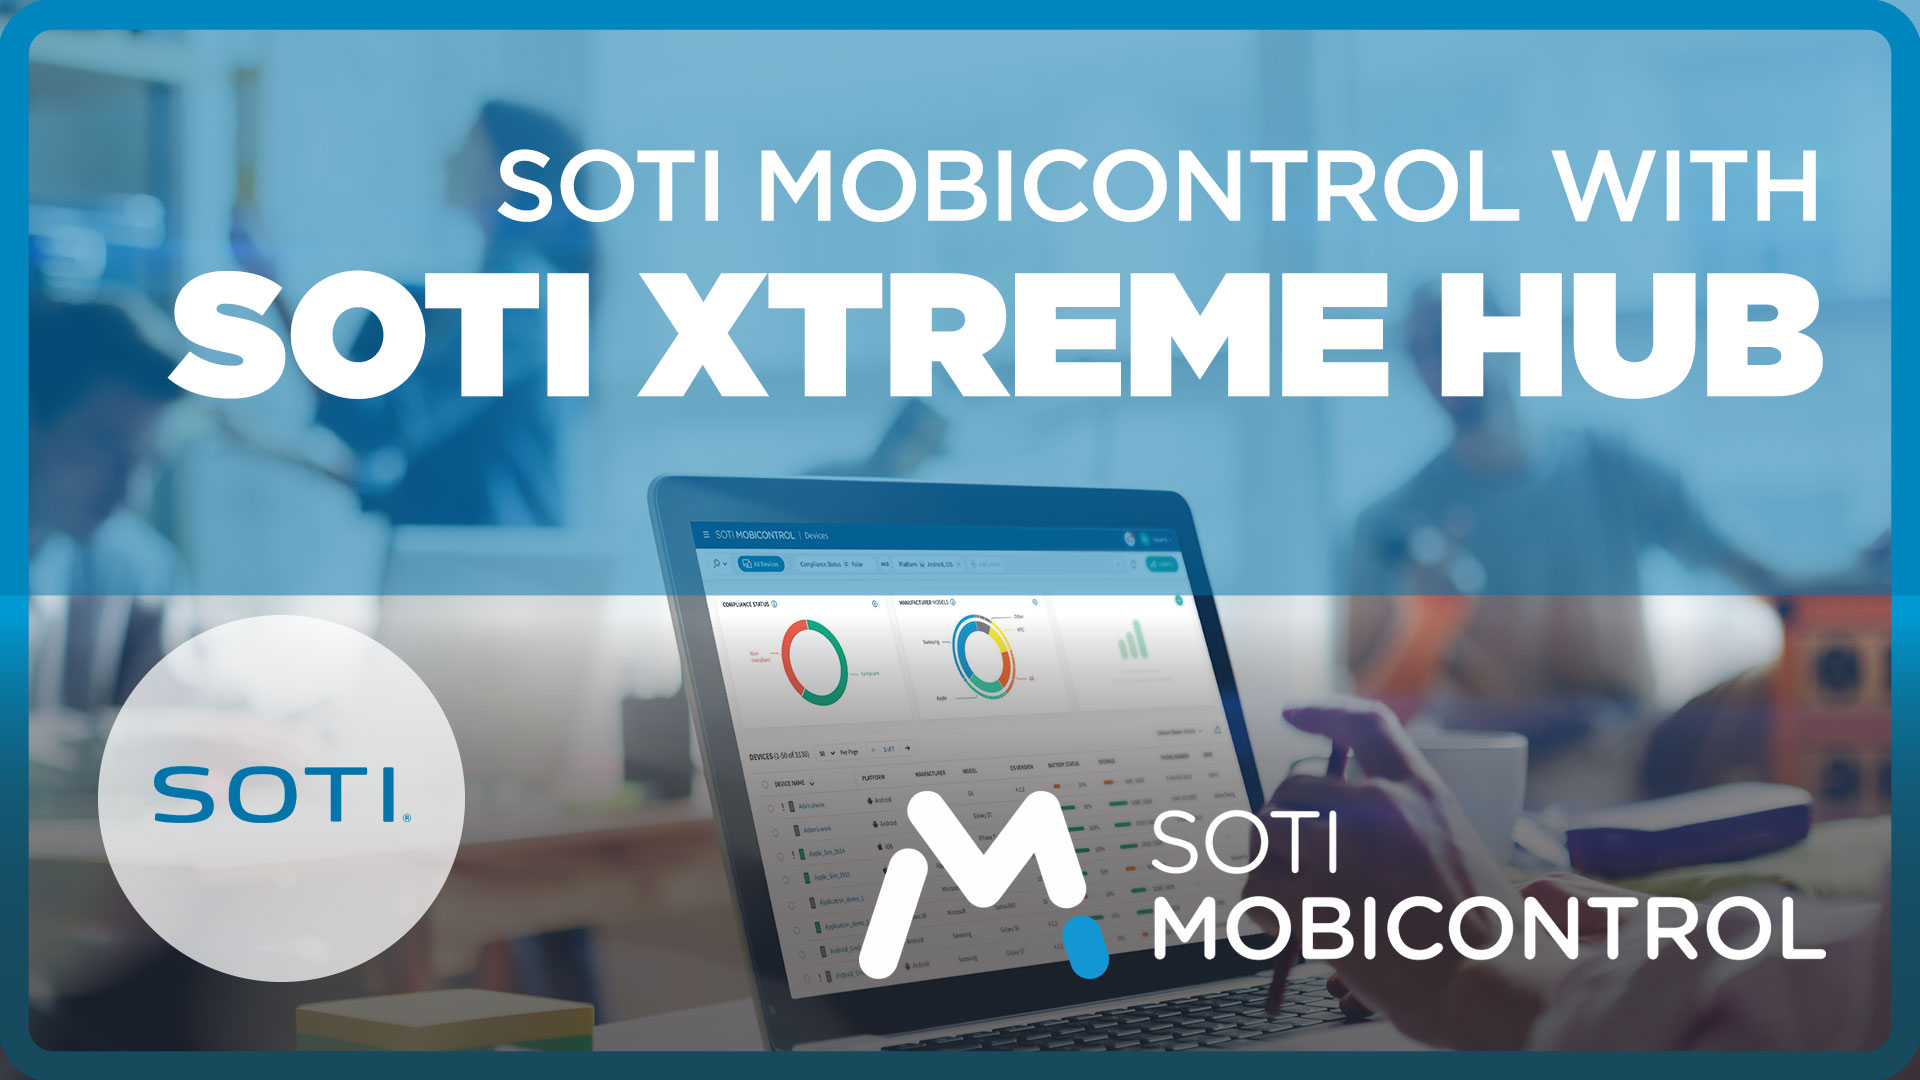 SOTI MobiControl with SOTI XTreme Hub Video